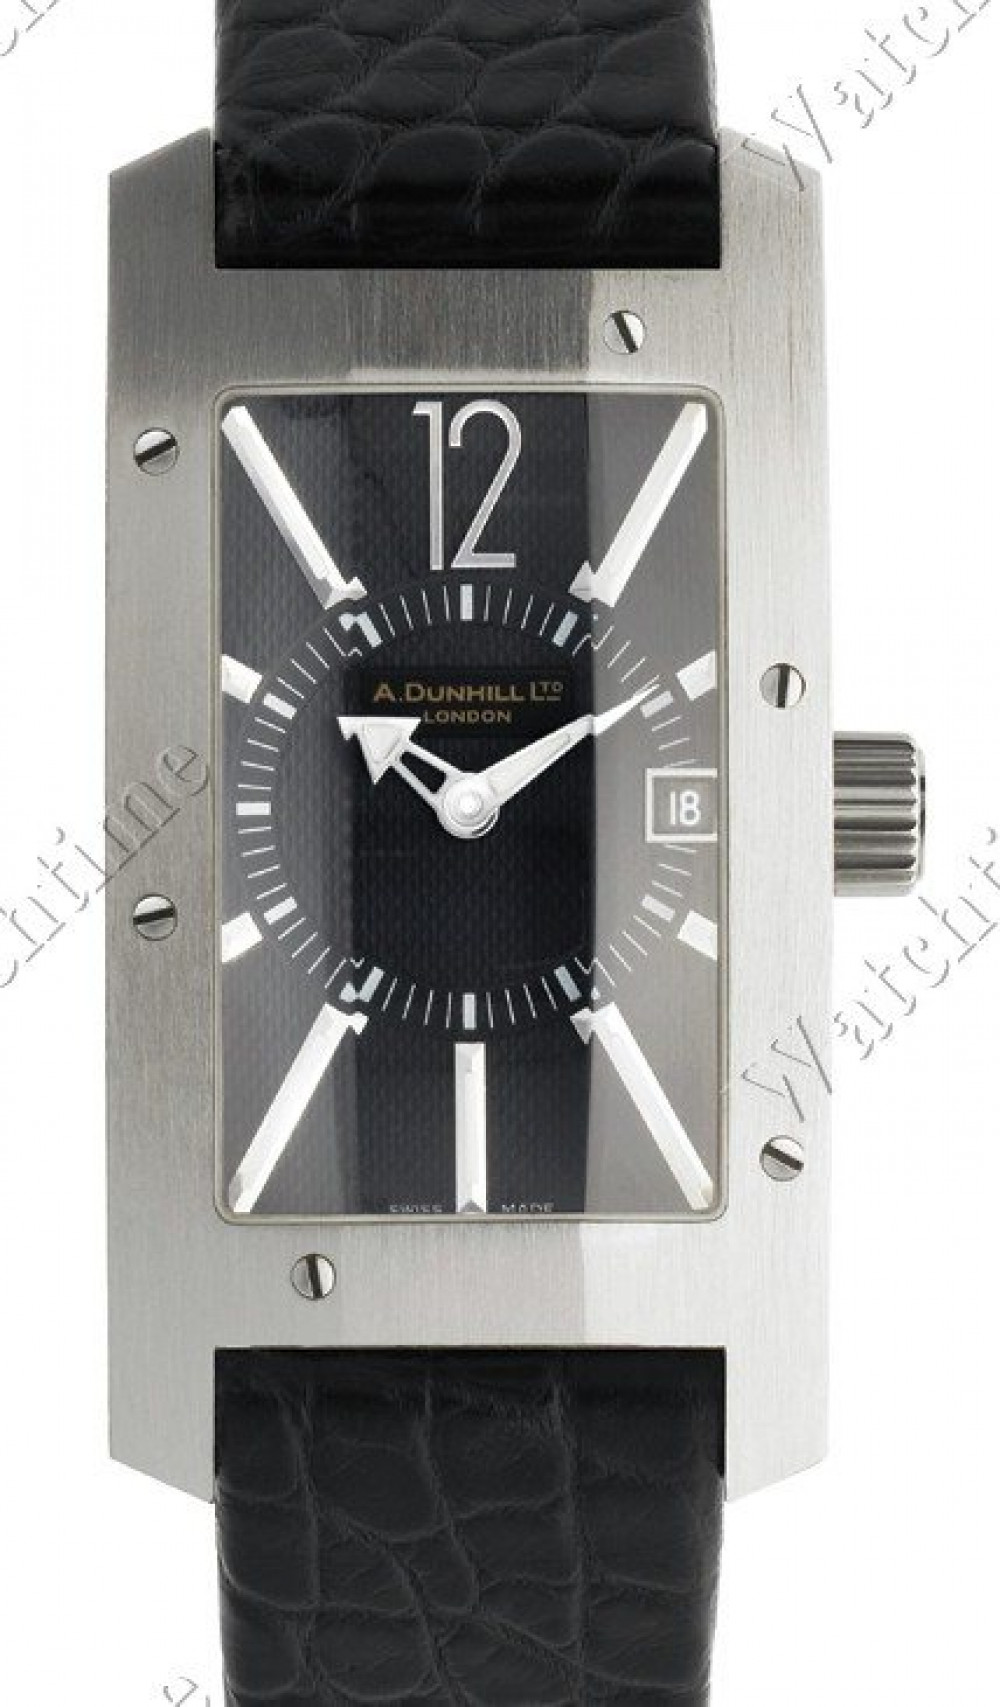 Zegarek firmy Dunhill, model Citytamer